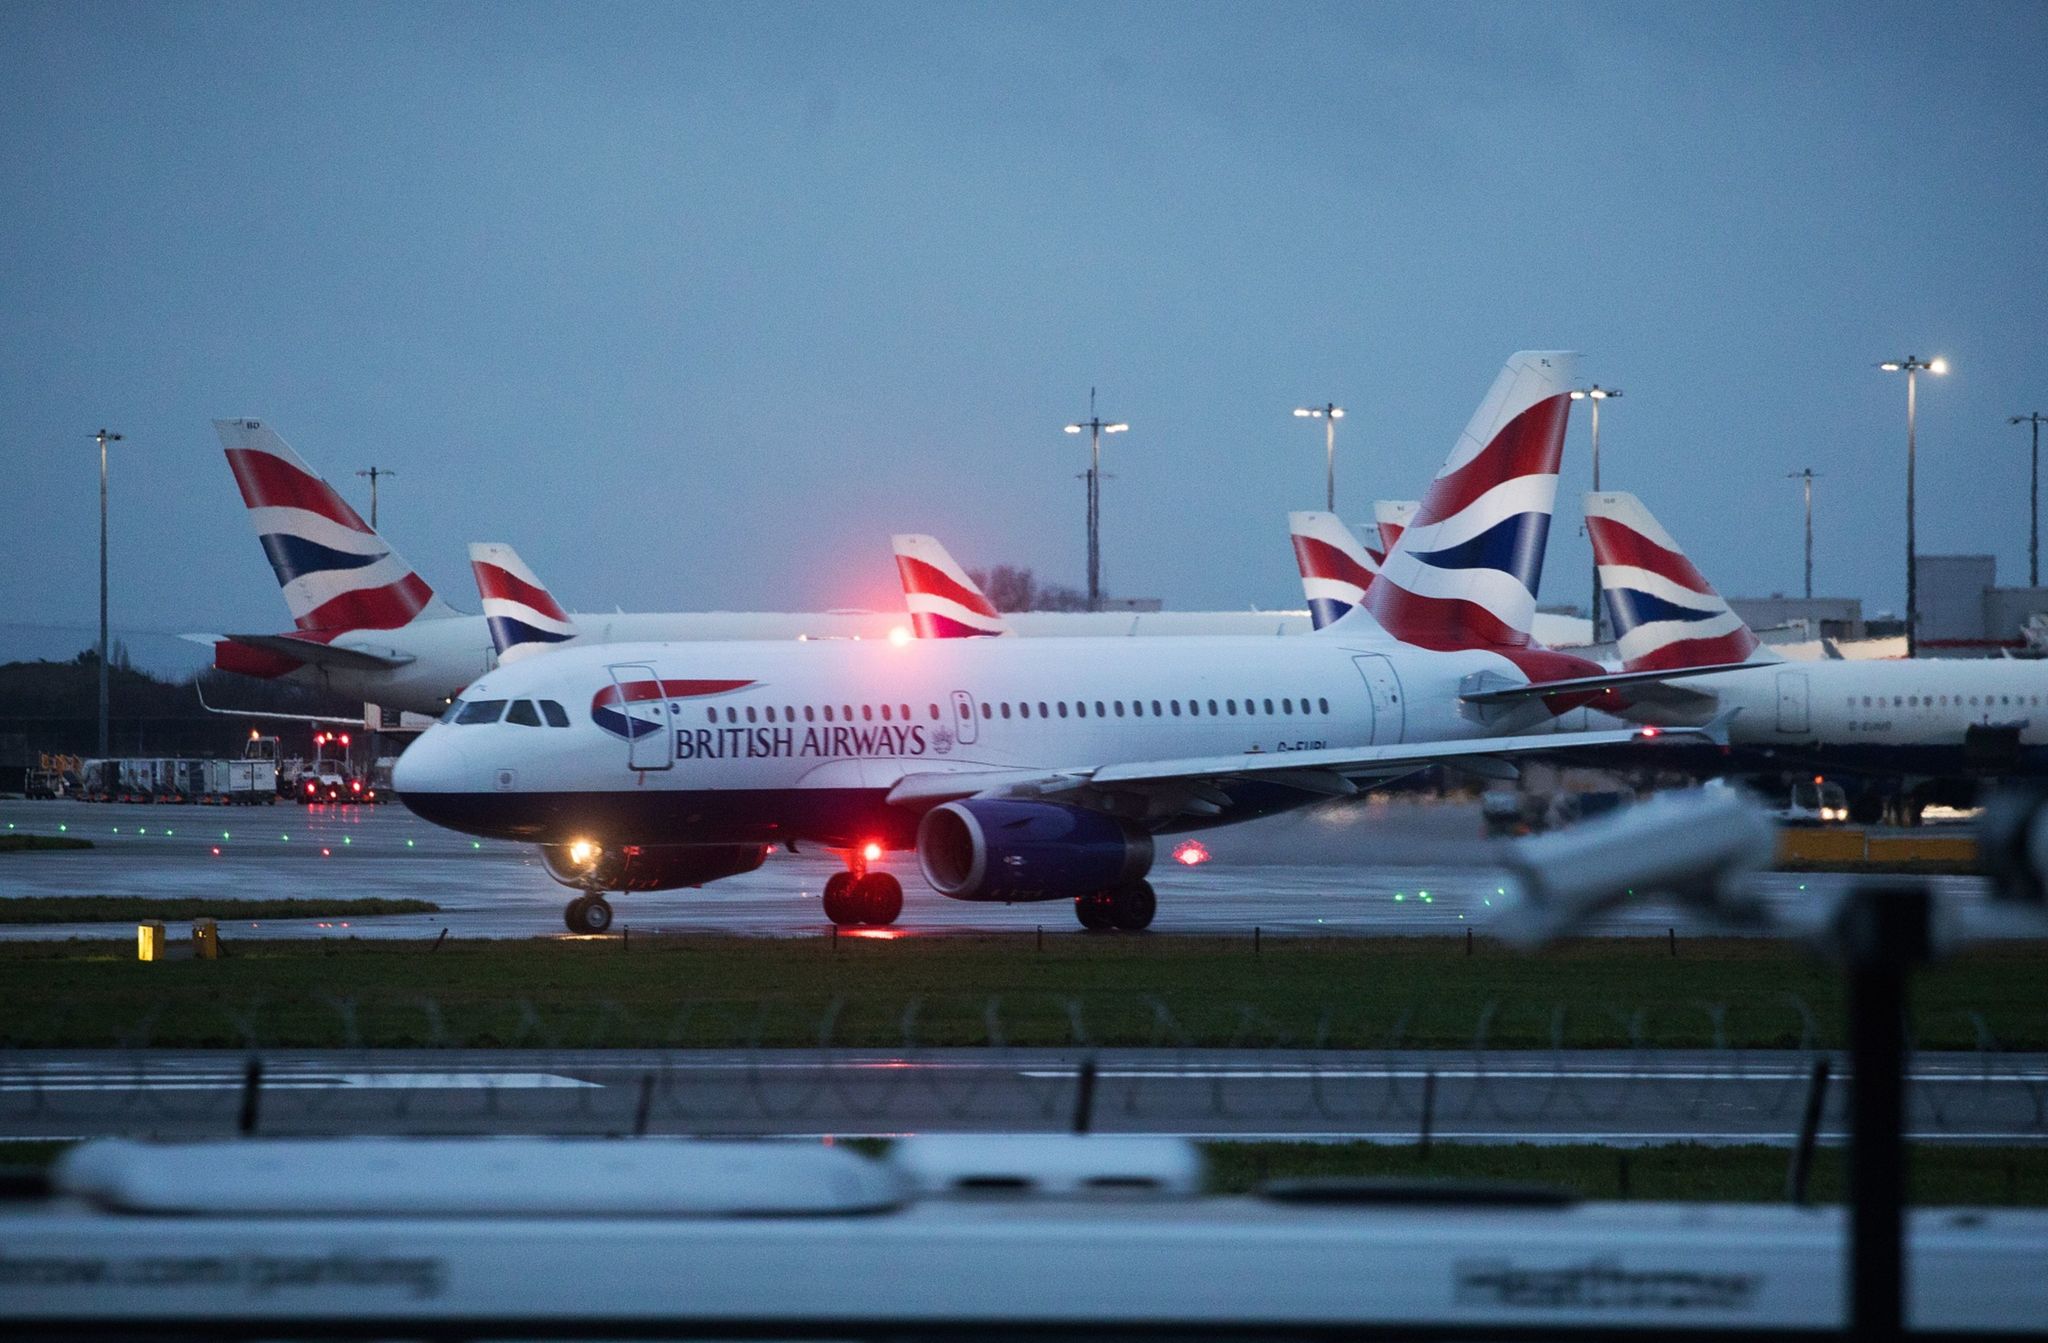 British Airways ha sido una de las principales aerolneas que ms ha presionado para reducir tasas en Heathrow.